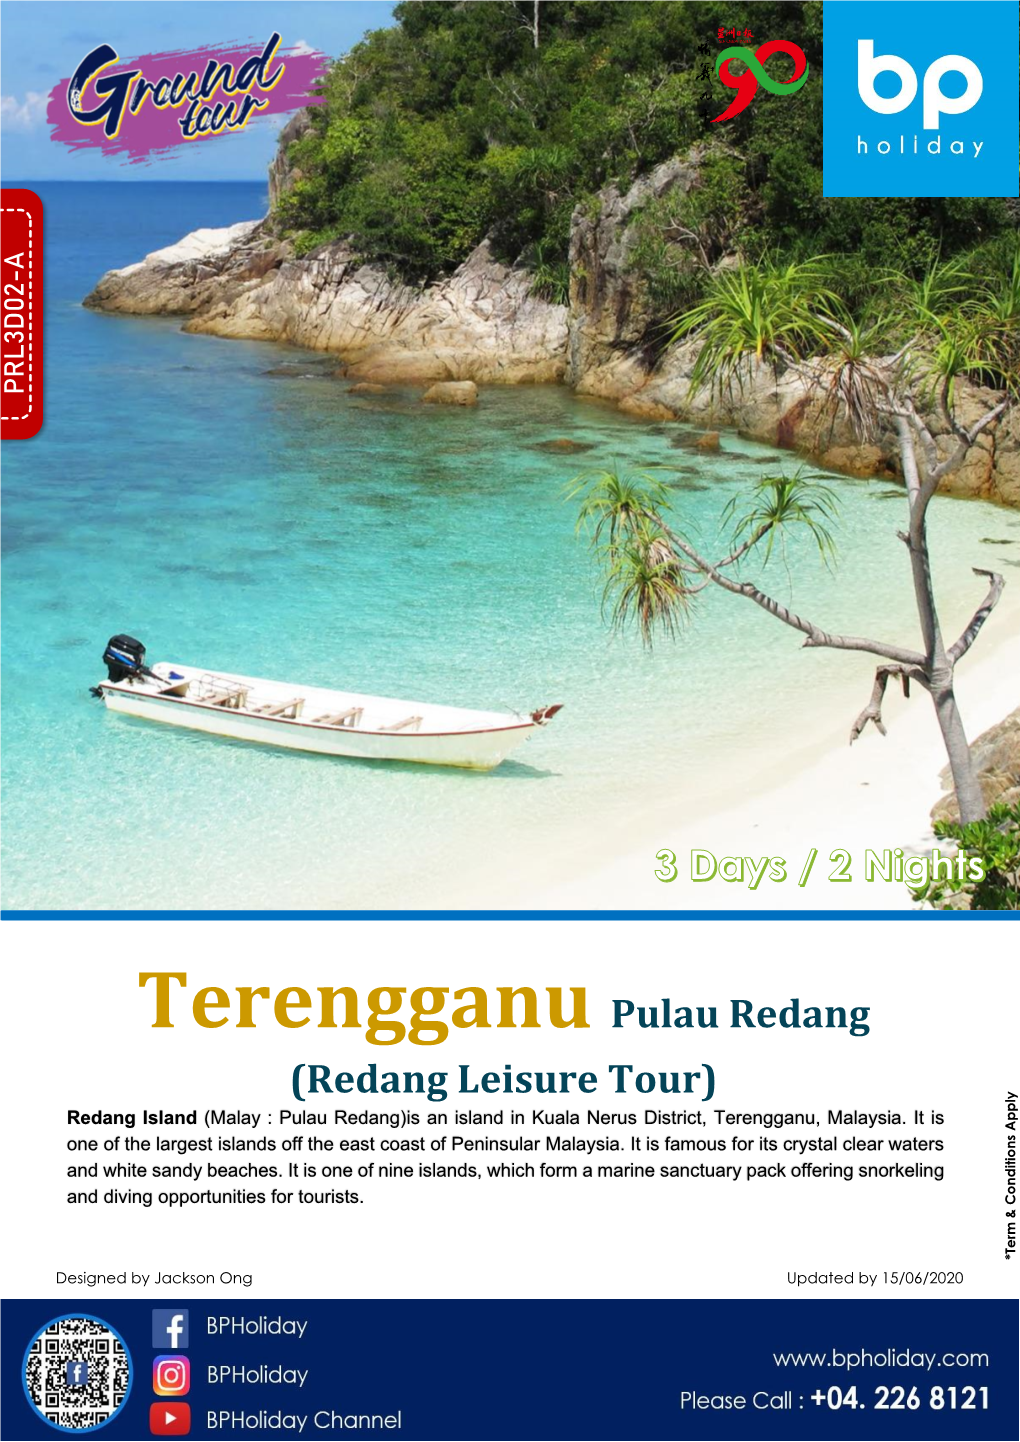 Terengganu Pulau Redang